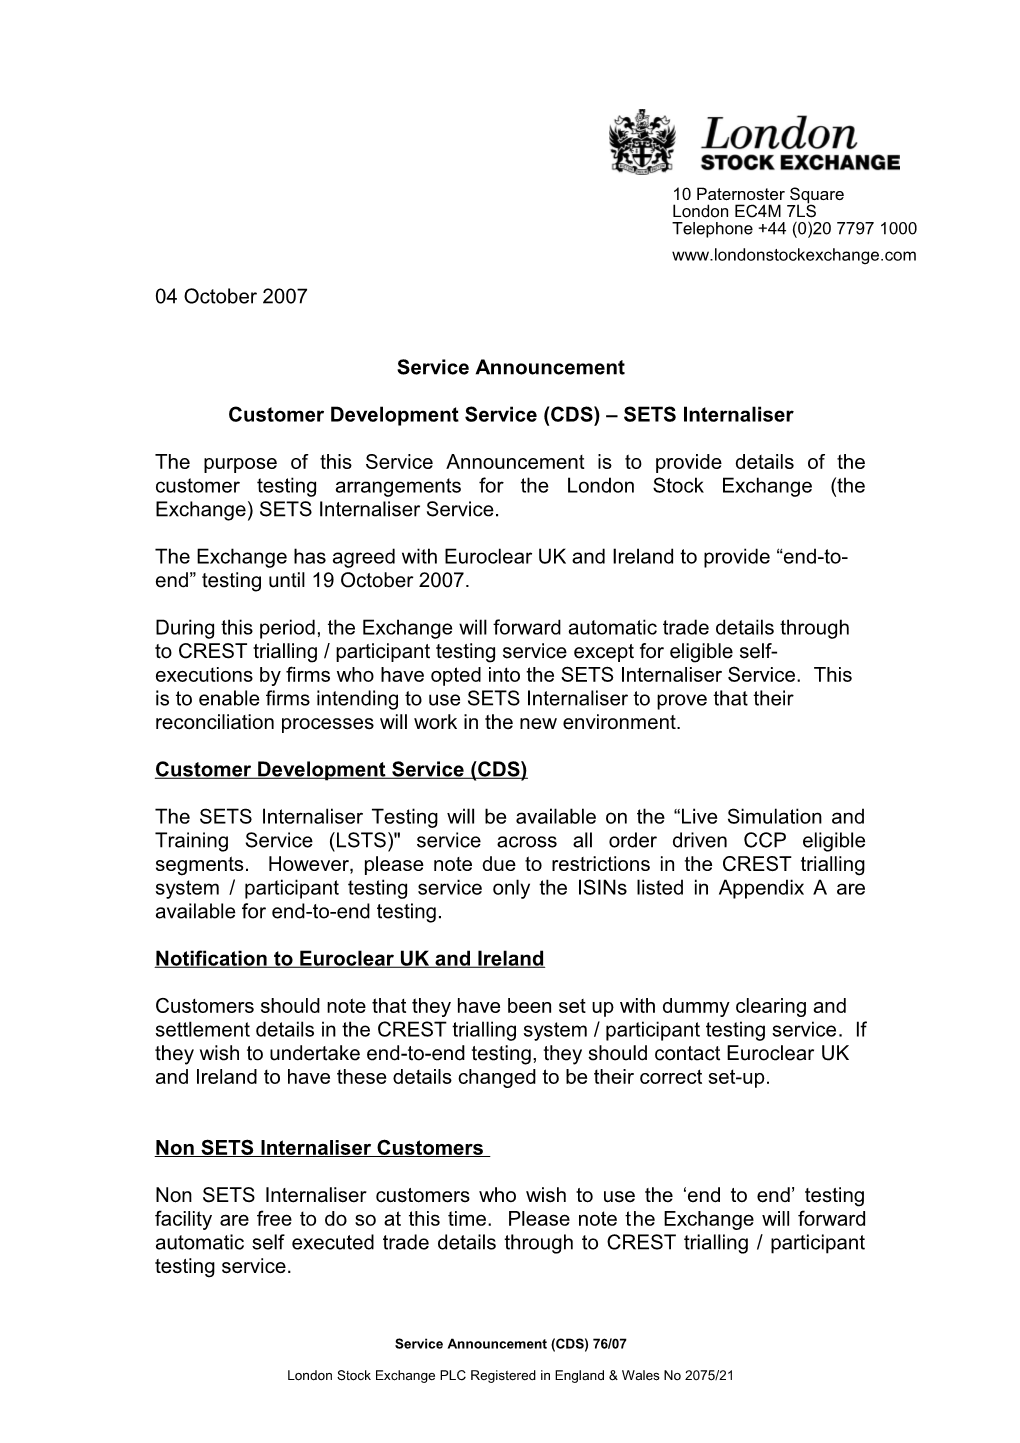 Customer Development Service (CDS) SETS Internaliser